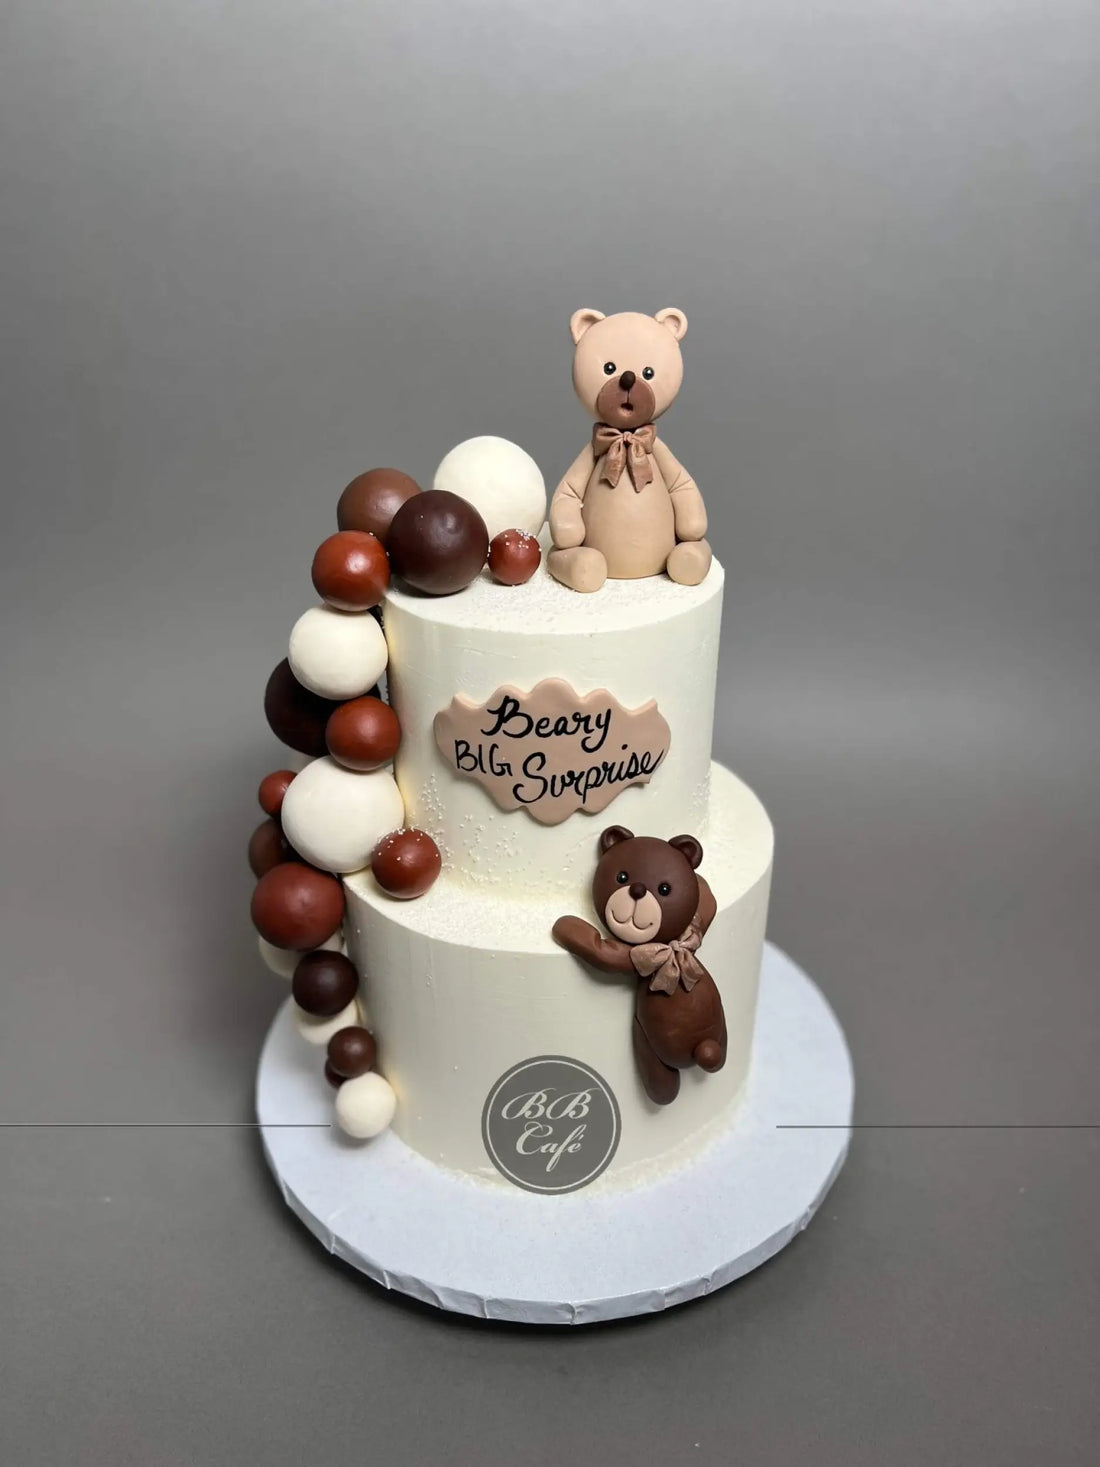 Bears &amp; spheres on buttercream - custom cake